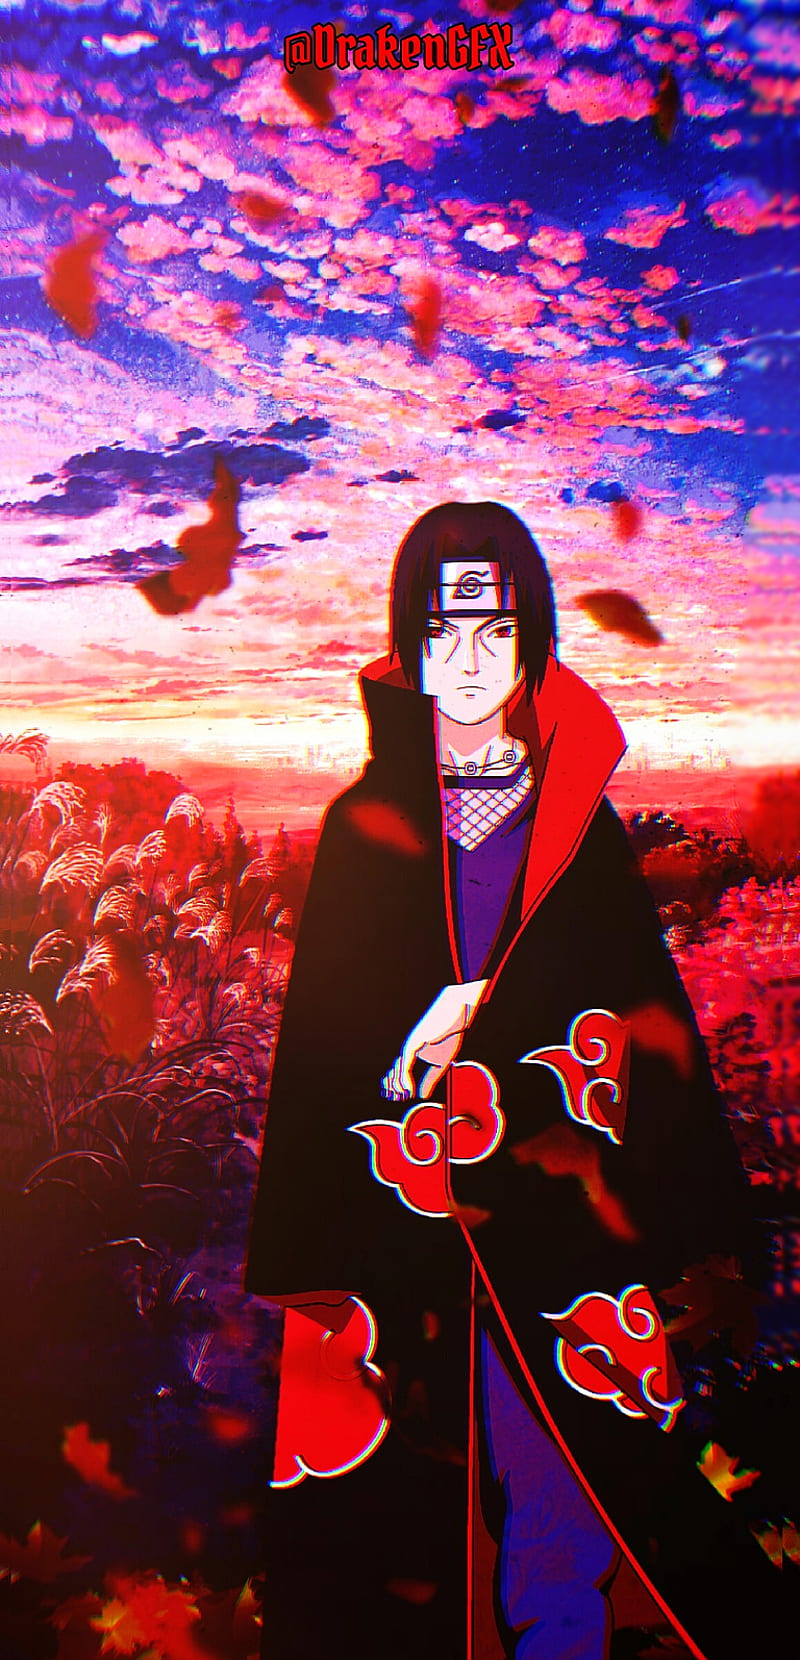 Sasuke: Mời bạn đến khám phá hình ảnh về nhân vật Sasuke Uchiha - một trong những nhân vật nổi tiếng của bộ truyện Naruto. Xem những cảnh chiến đấu đỉnh cao, những kỹ năng ninja sắc bén và đặc biệt là sự tính toán khôn khéo của Sasuke. Hãy cùng khám phá tài năng phi thường của anh chàng này trong bộ tranh Naruto.